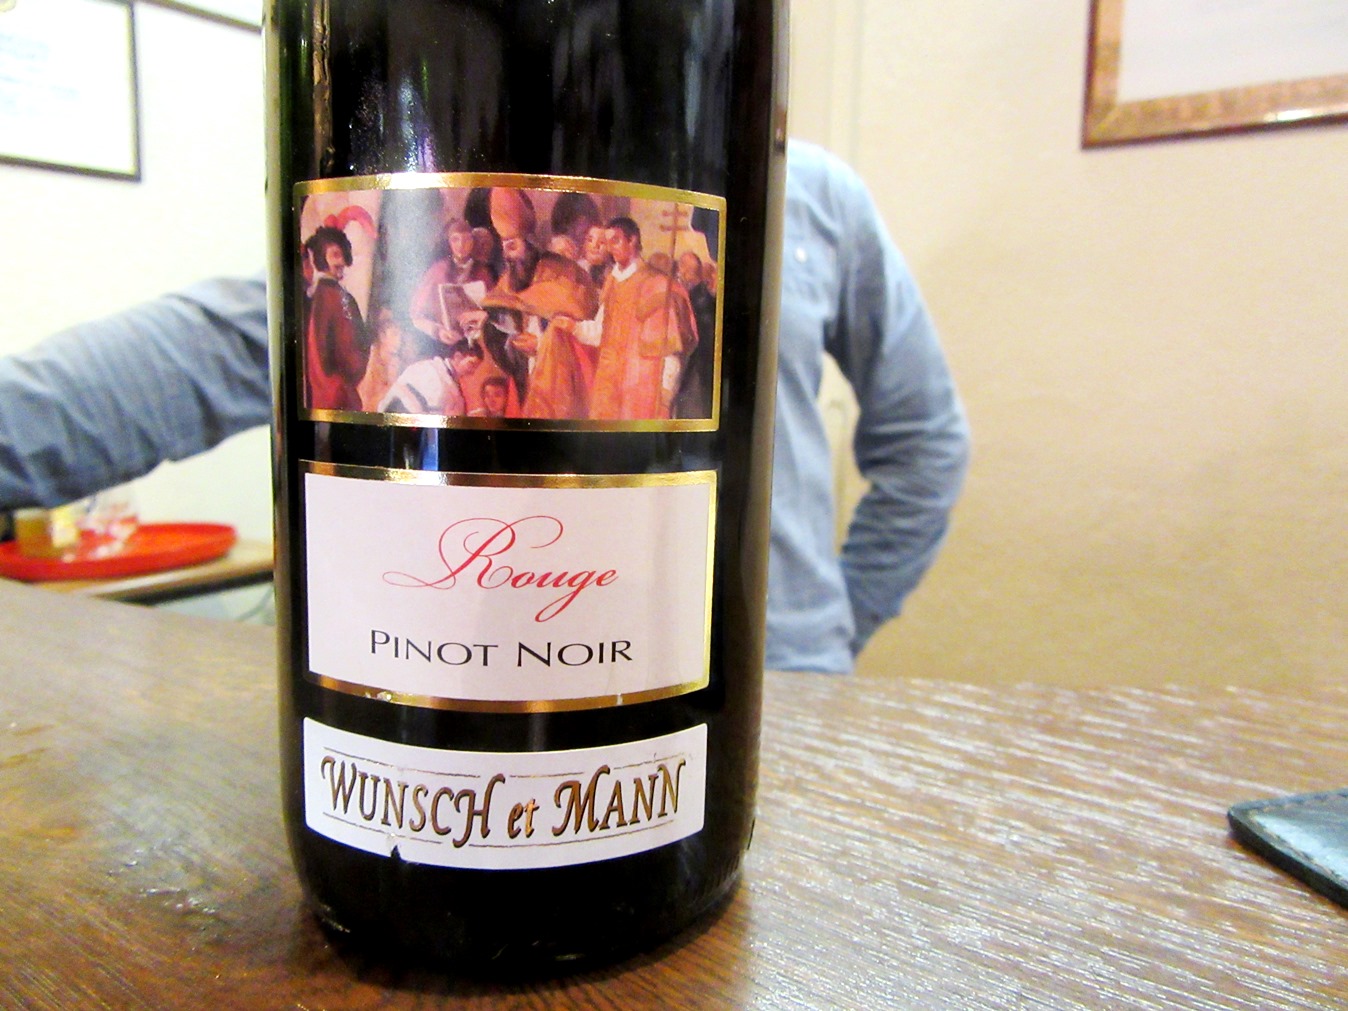 Wunsch et Mann, Reserve Pinot Noir 2014, Alsace, France, Wine Casual